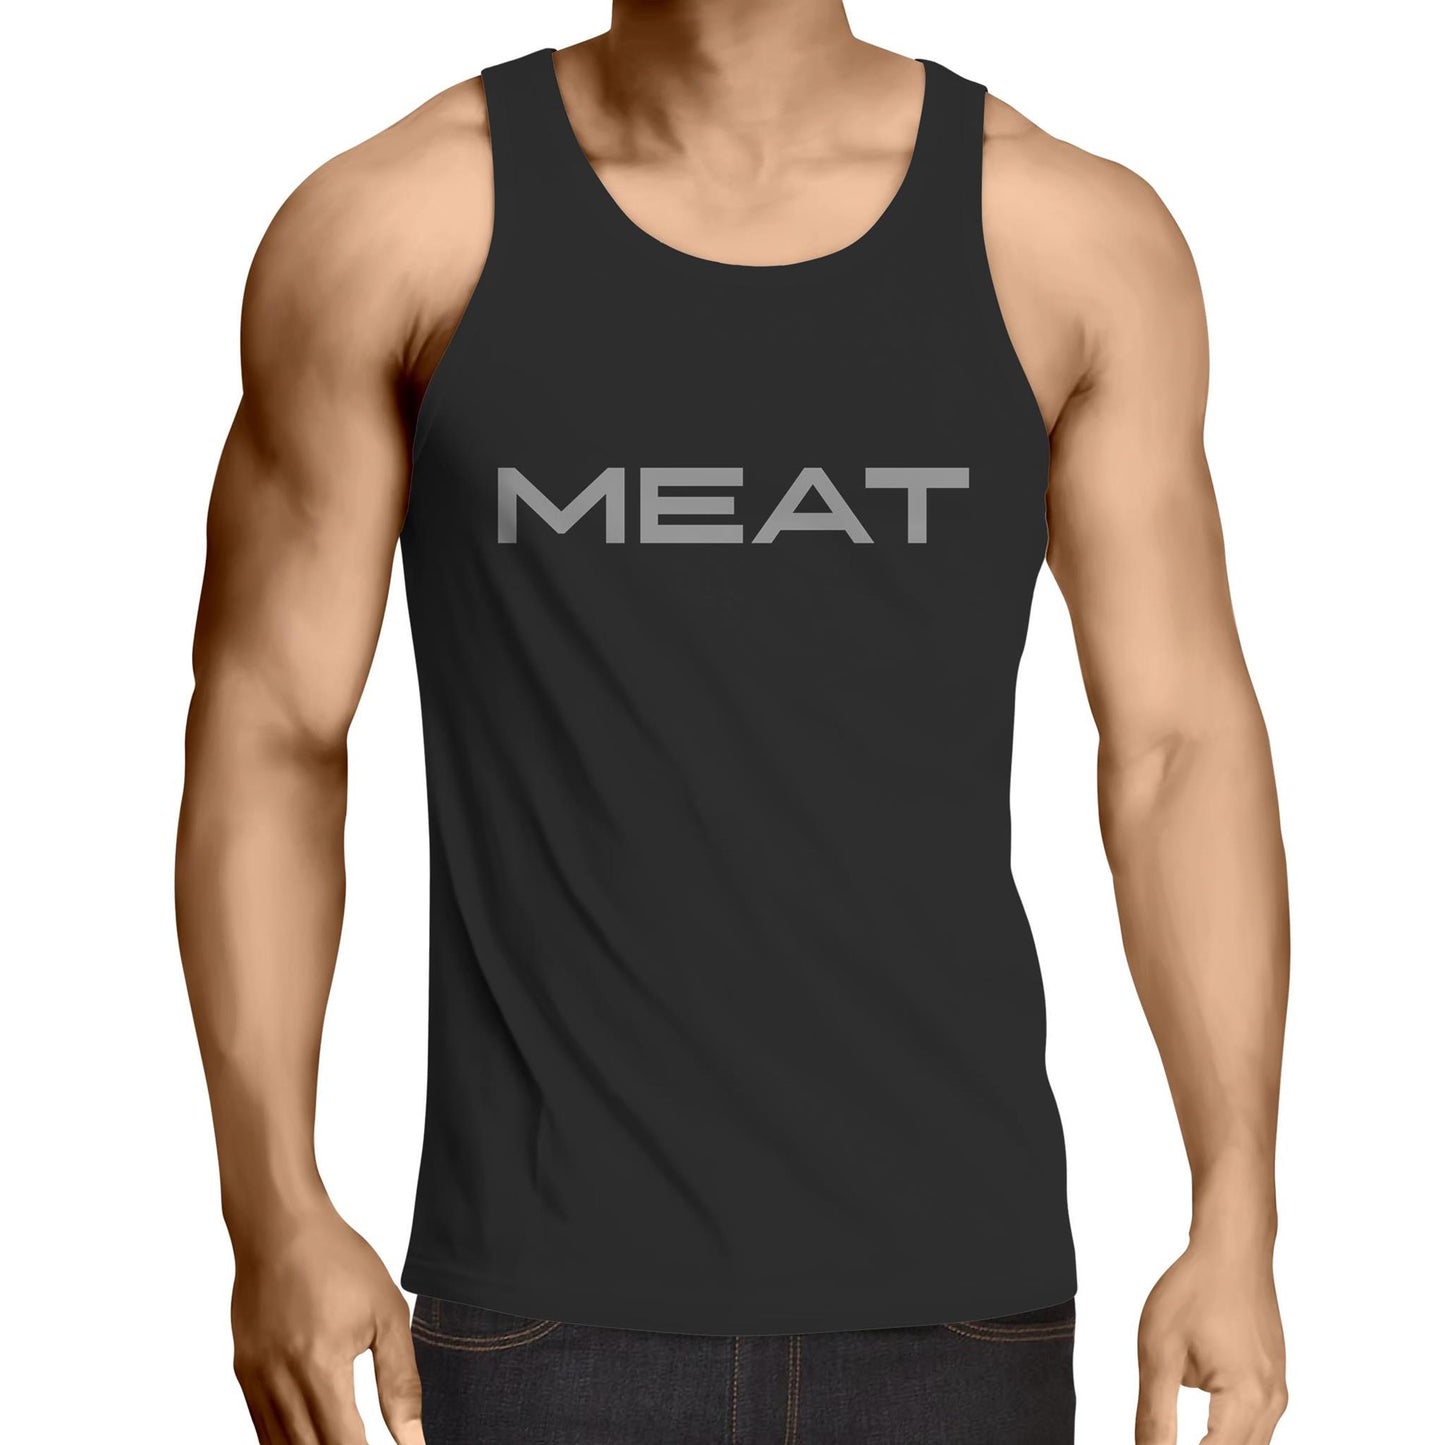 MEAT - Mens Singlet Top